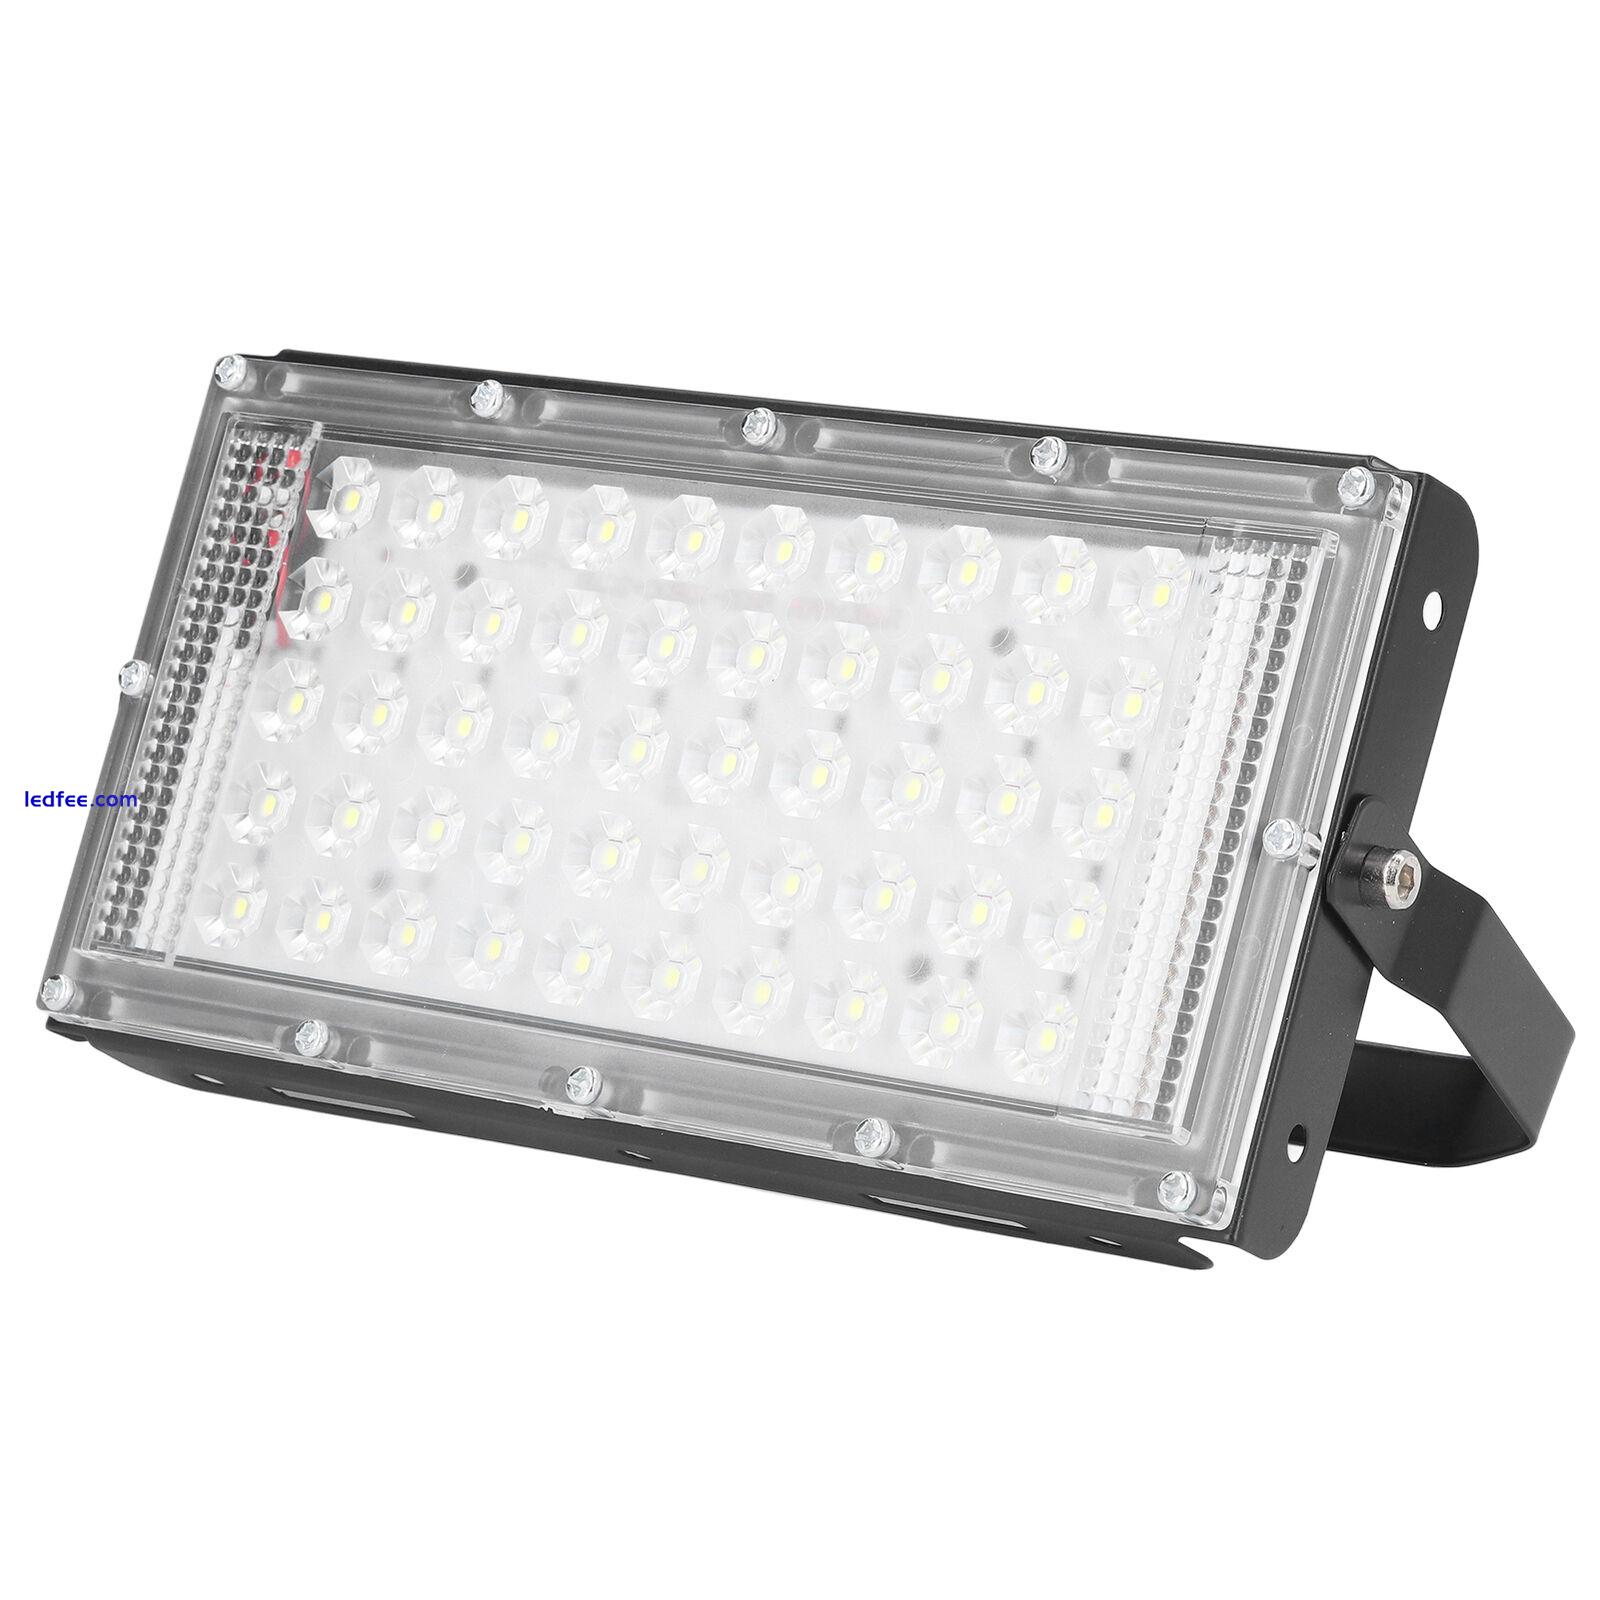 LED Flood Light 50W 12V Super Bright White Light Waterproof Outdoor LED TPG 2 